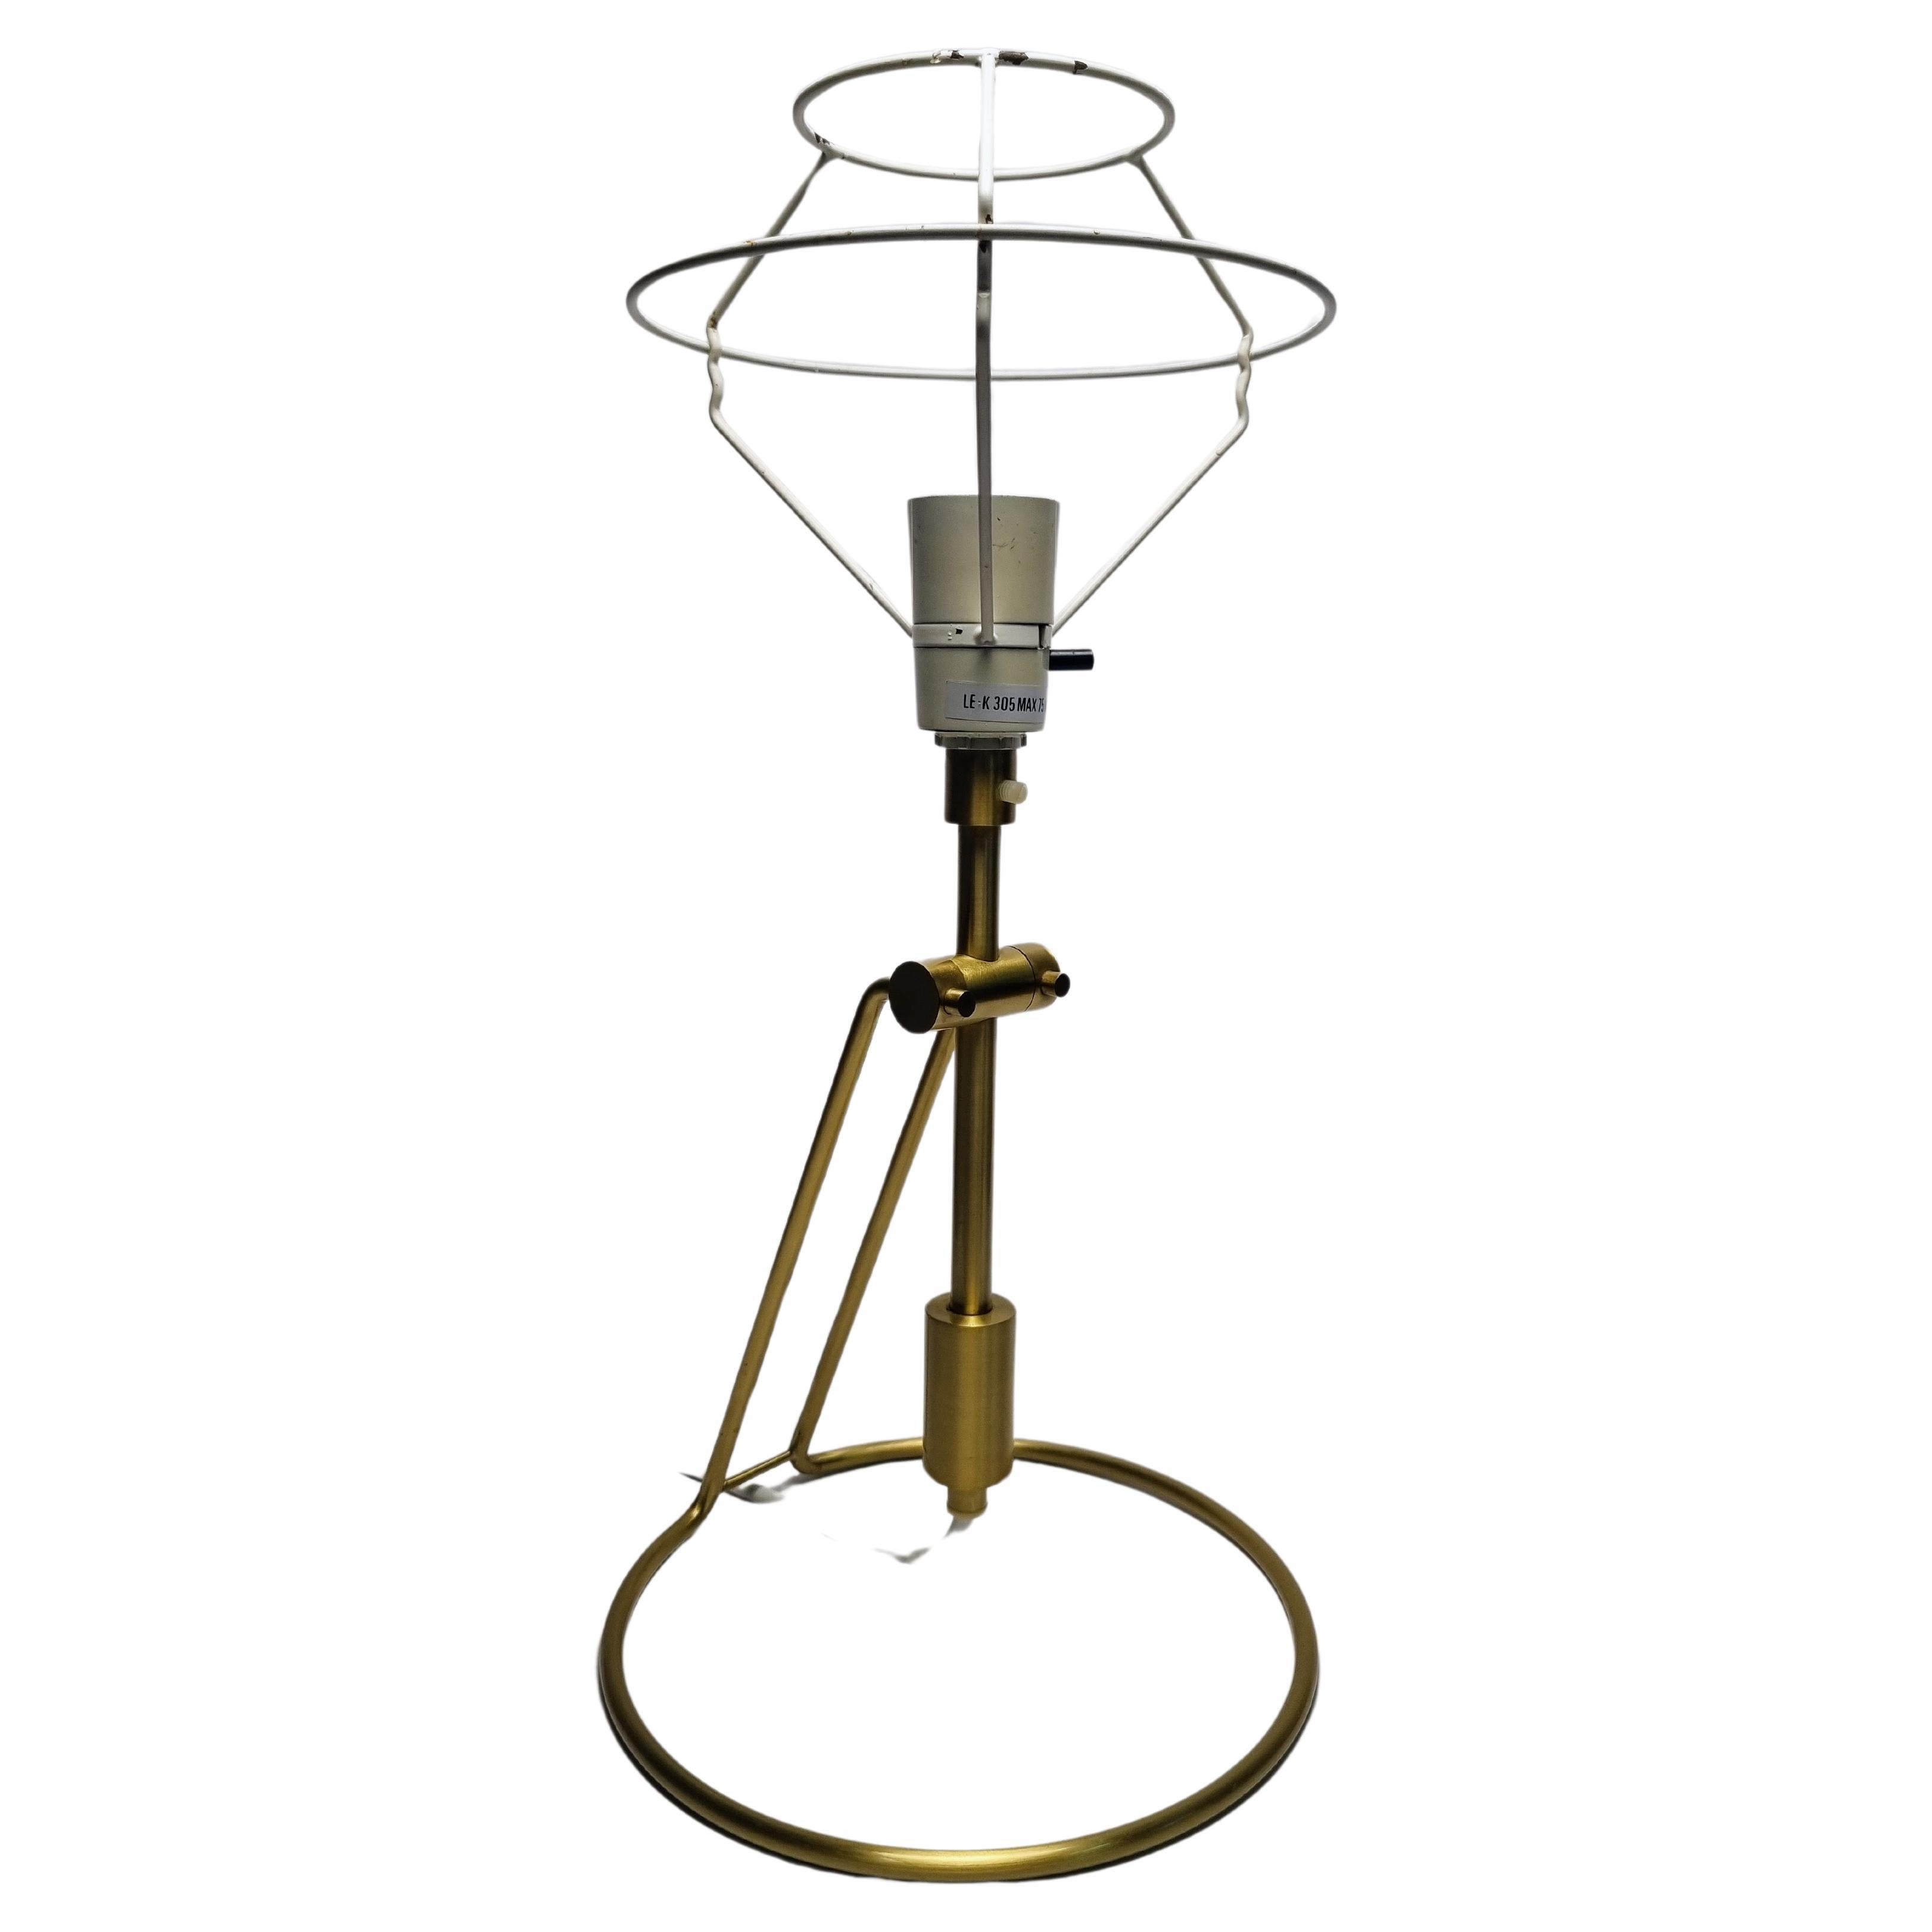 Le Klint model 305 brass table/wall lamp